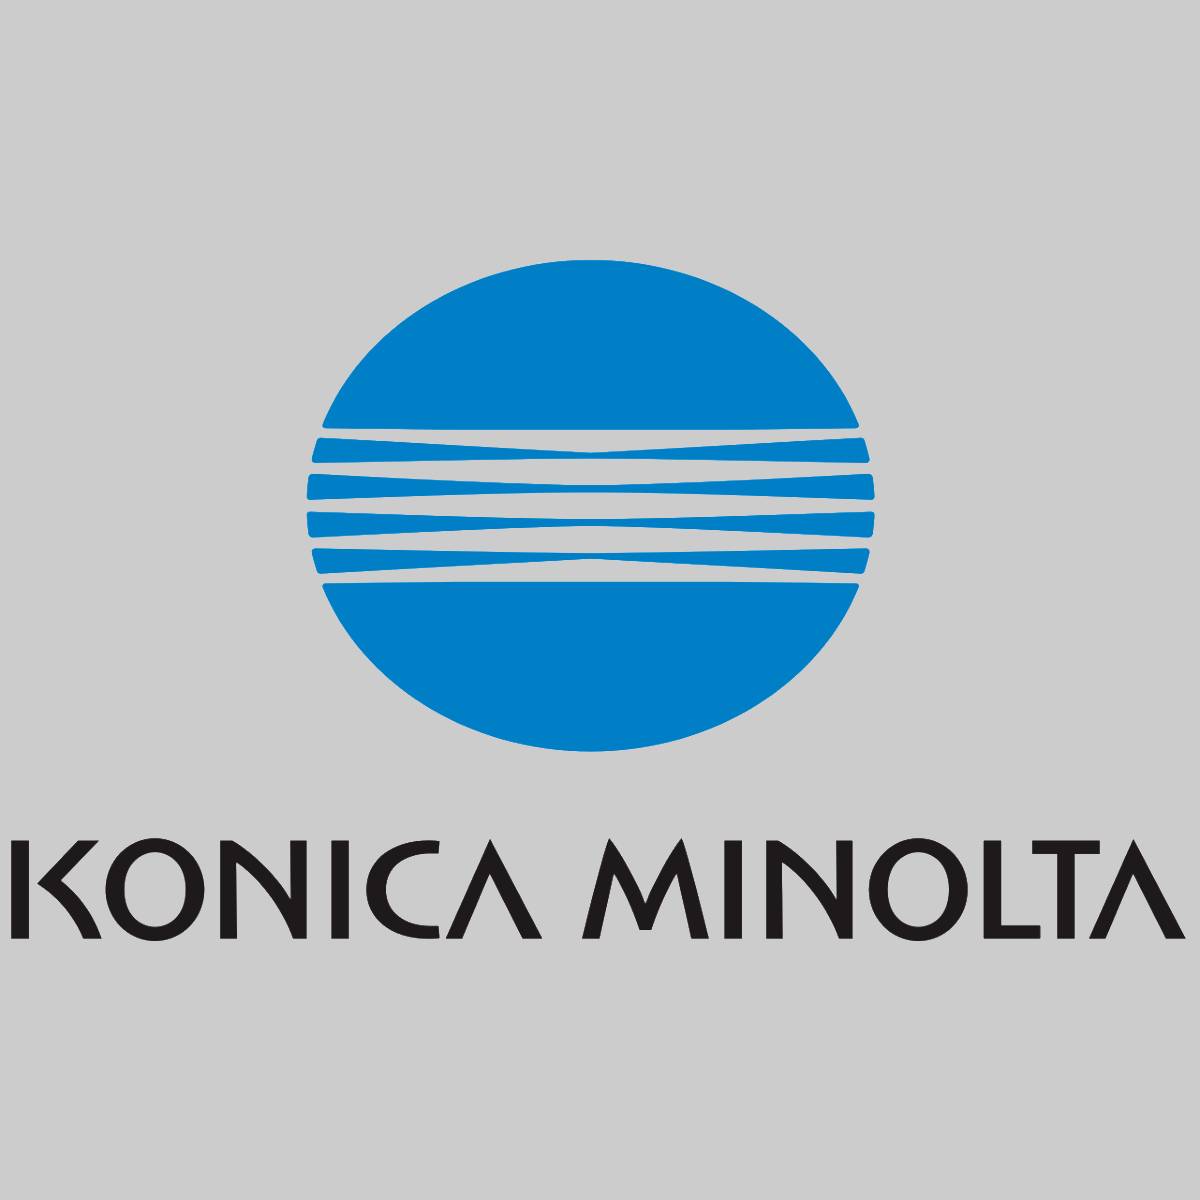 "Original Konica Minolta Magenta Toner A06V353 für Magicolor 5500 NEU OVP